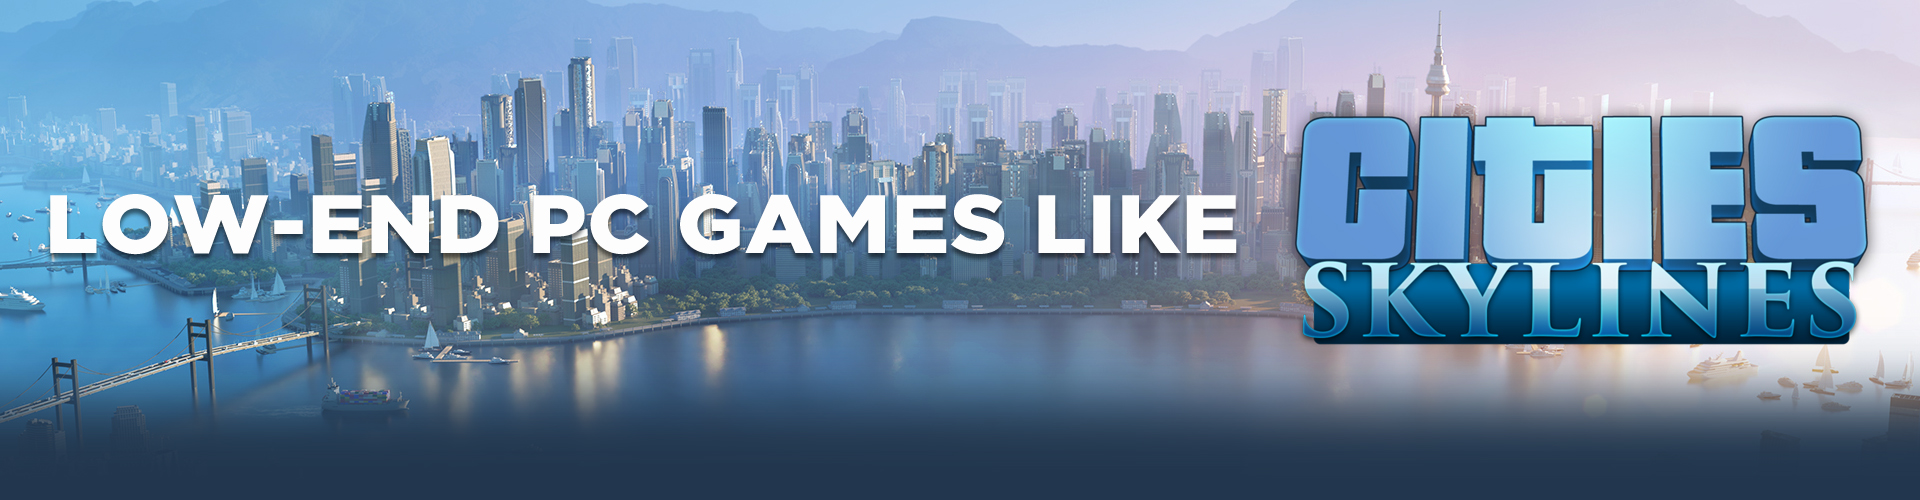 Giochi come Cities Skyline per pc poco potenti